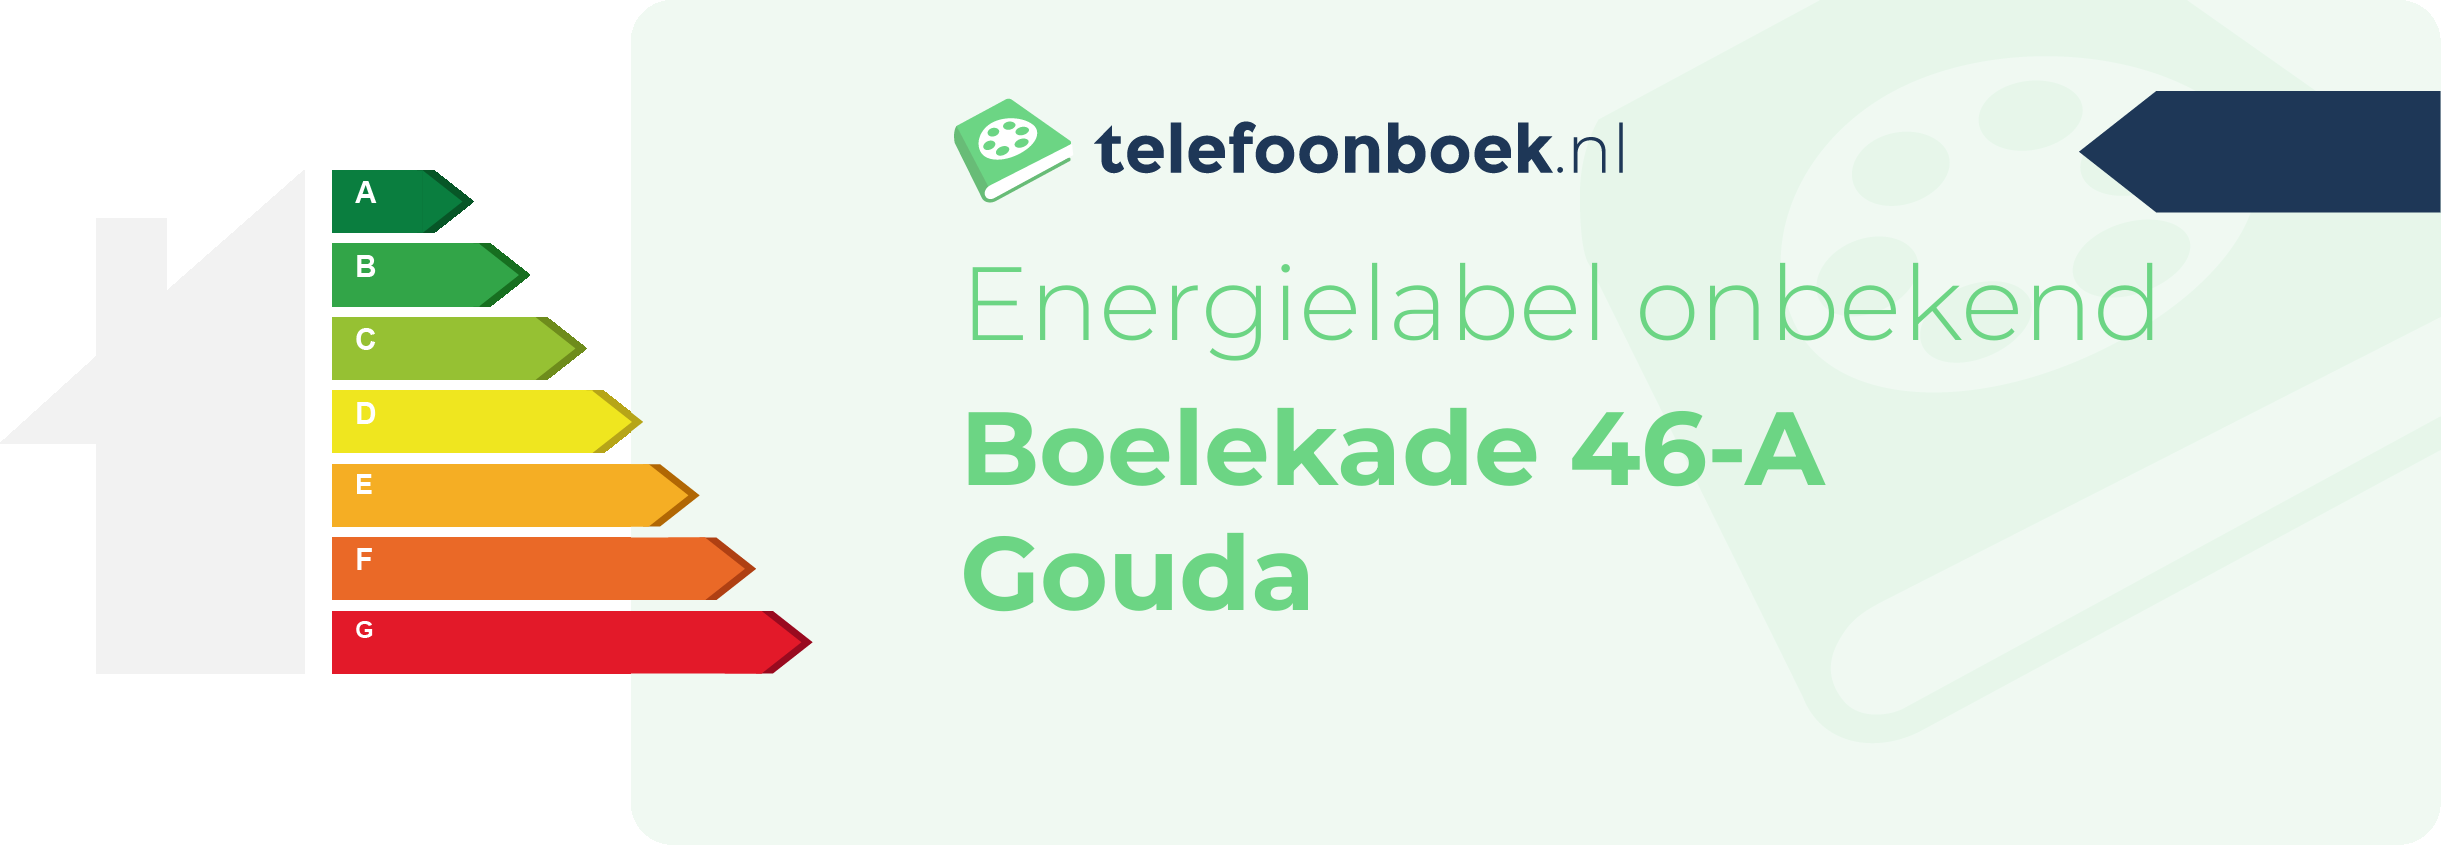 Energielabel Boelekade 46-A Gouda